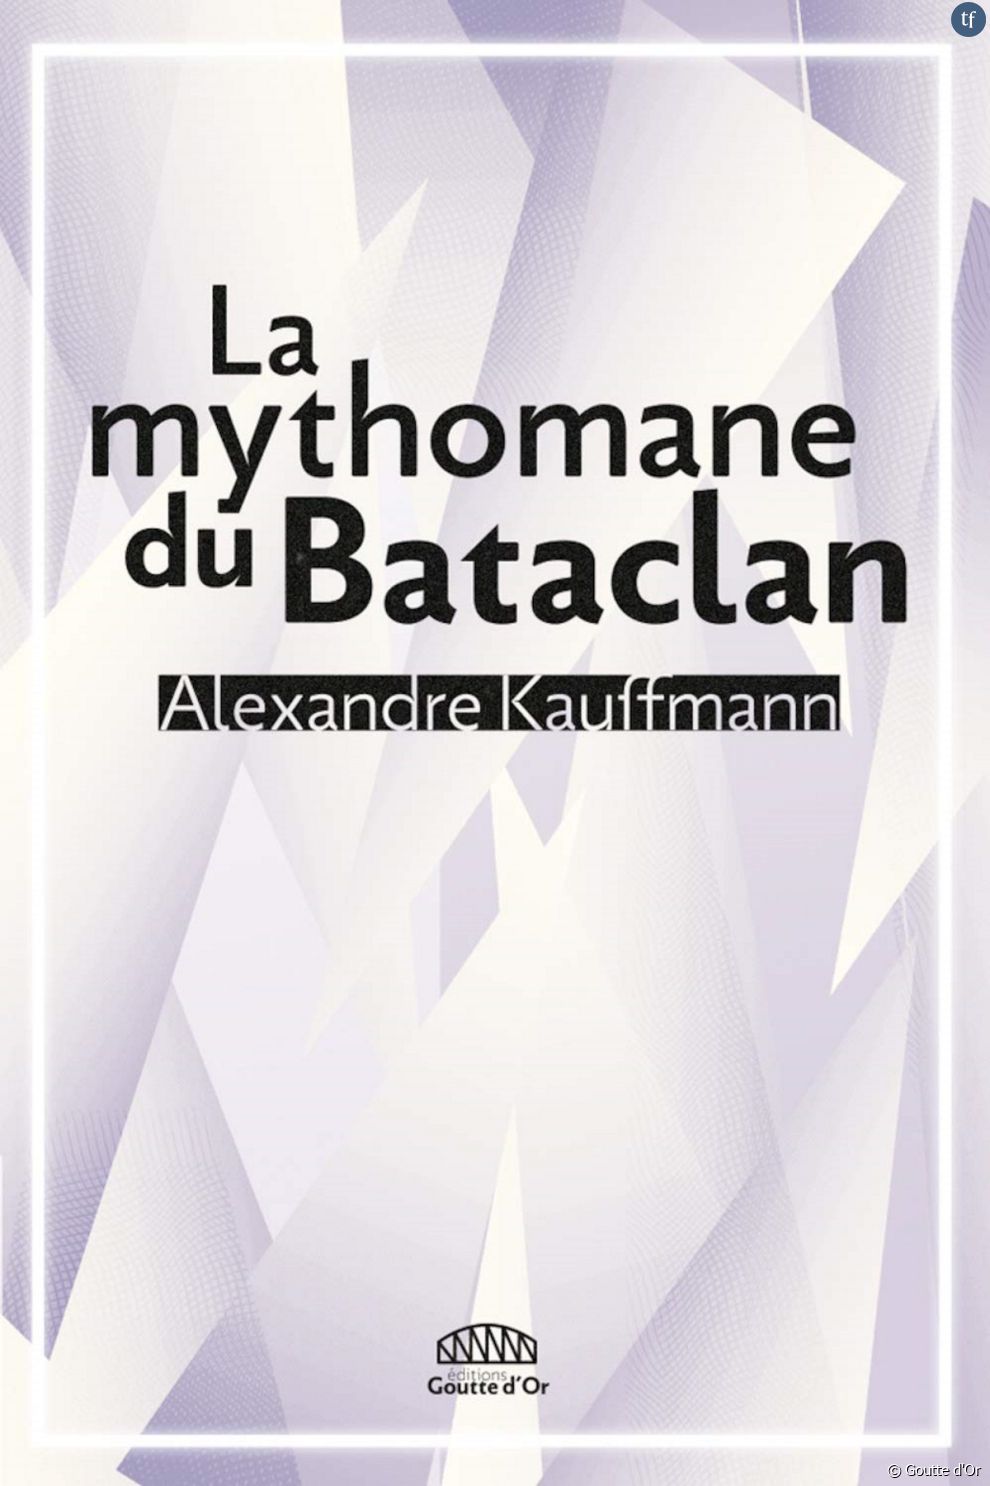  Cette histoire folle, mais vraie, c&#039;est celle de  La mythomane du Bataclan , histoire bien réelle auquel l&#039;auteur et journaliste Alexandre Kauffman a dédié une passionnante enquête éponyme aux éditions La Goutte d&#039;Or.  